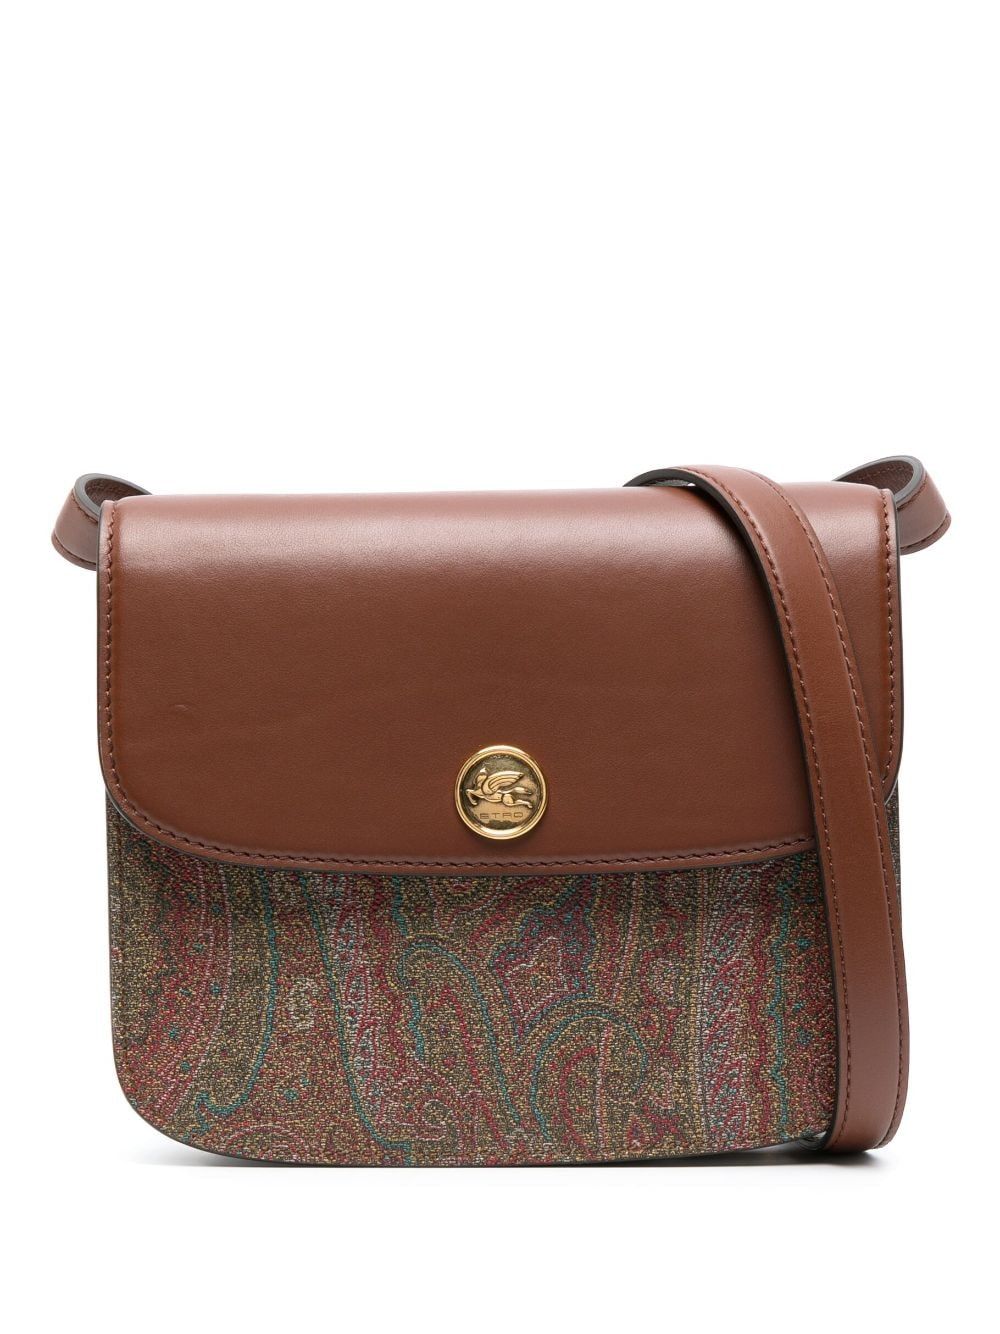 Túi xách túi gối chéo họa tiết Paisley sang trọng cho phụ nữ - bộ sưu tập FW23